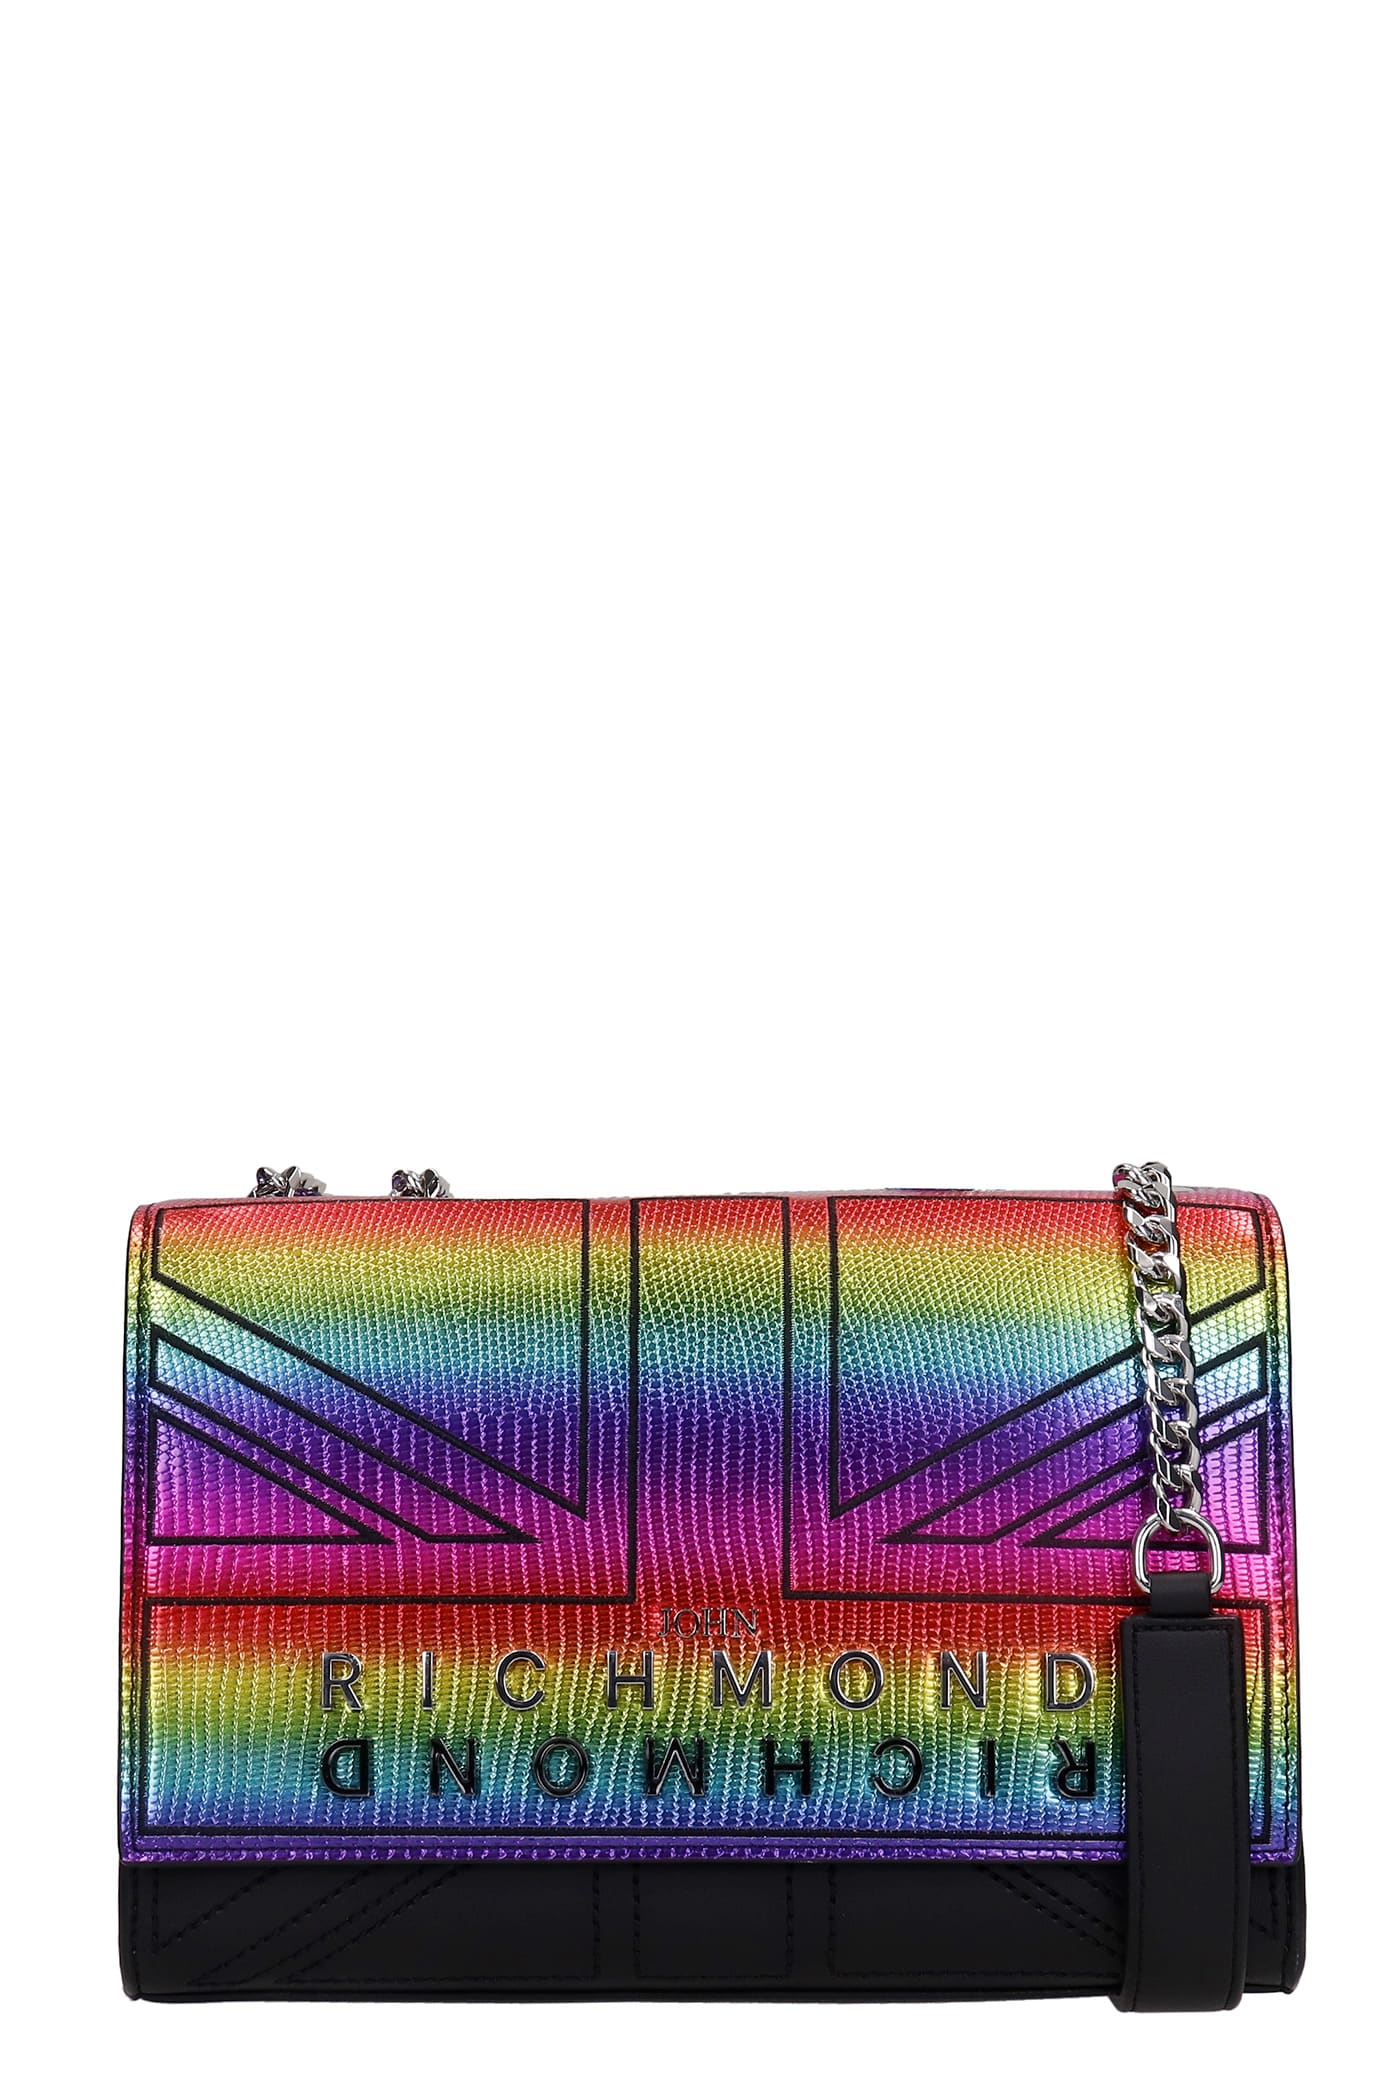 John Richmond Vineland Shoulder Bag In Multicolor Leather